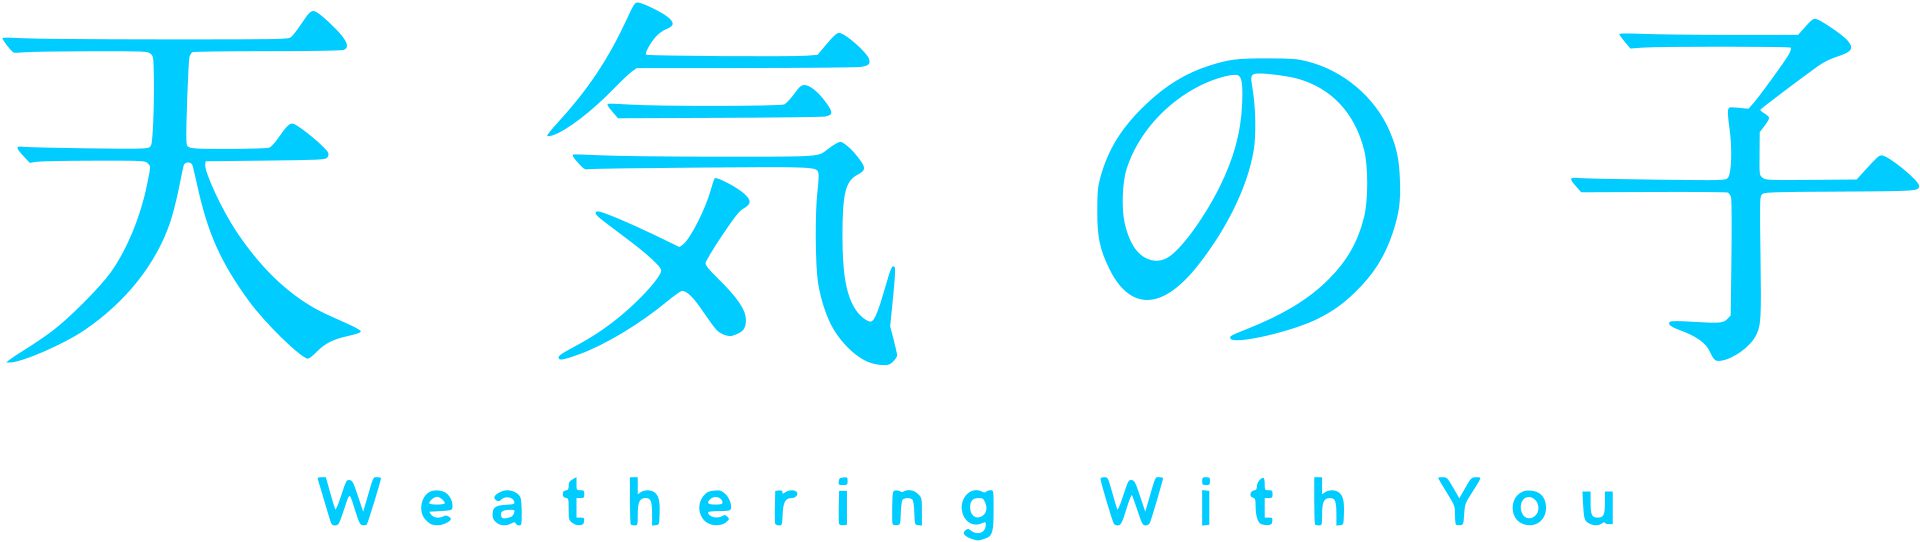 Weathering With You, Wordmark Logo